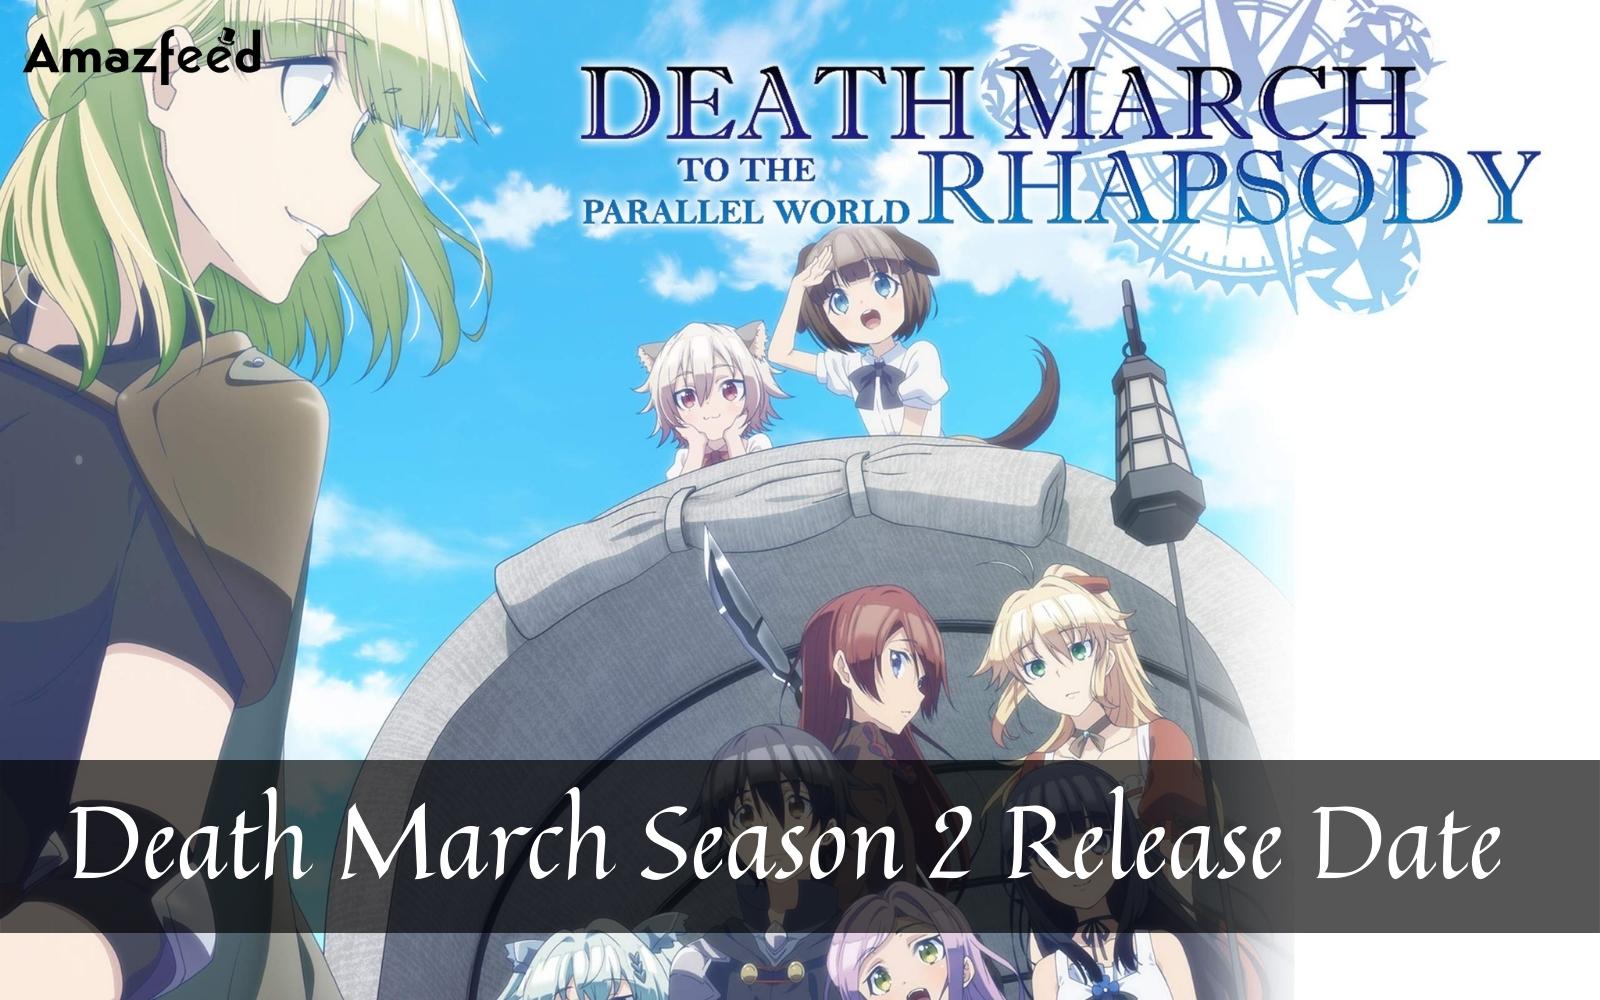 2ª temporada de Death March: data de lançamento, visual, notícias